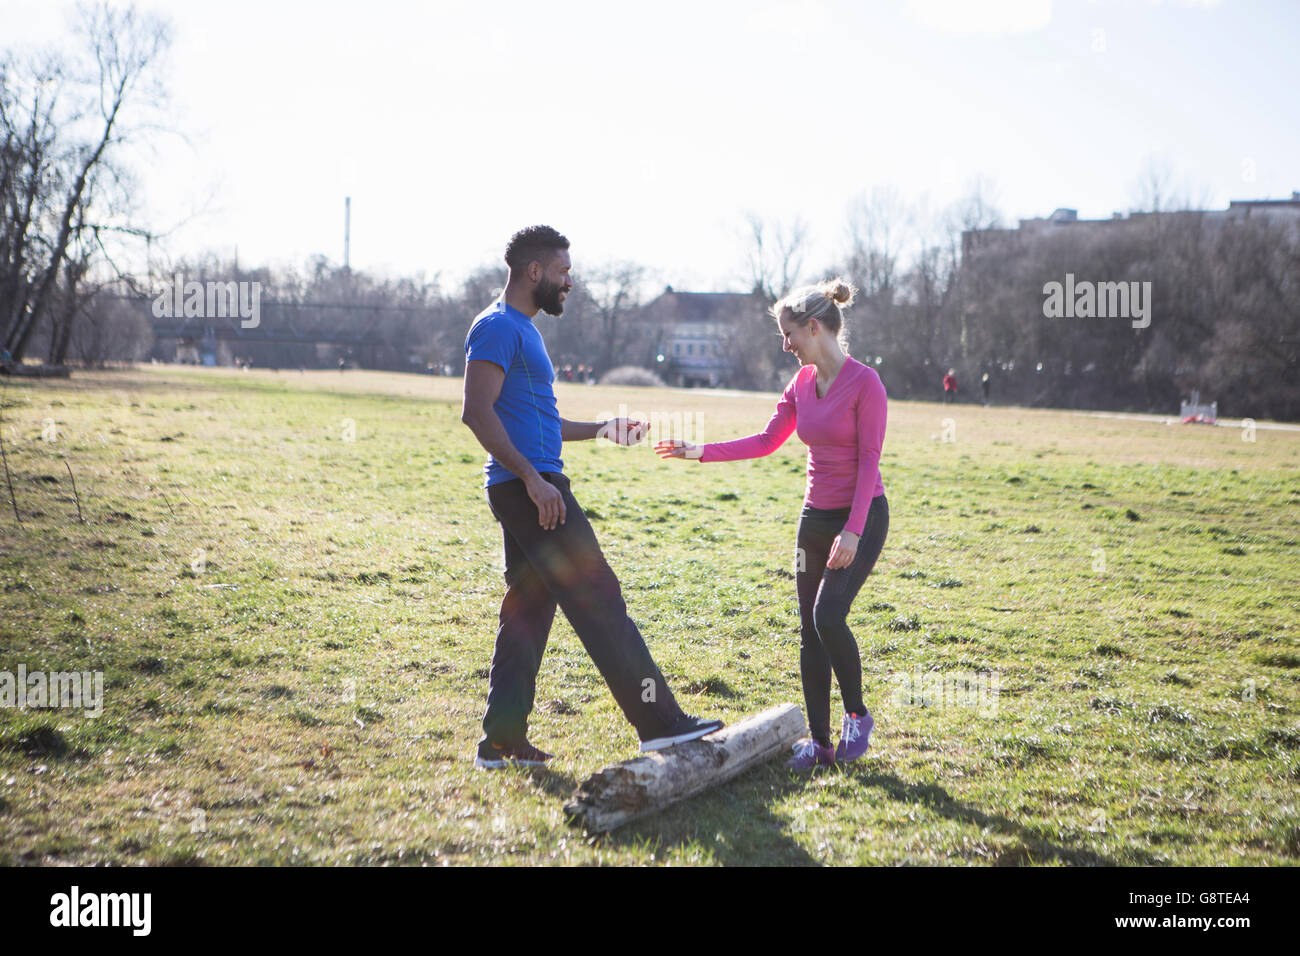 Jeune couple exercising in city park Banque D'Images